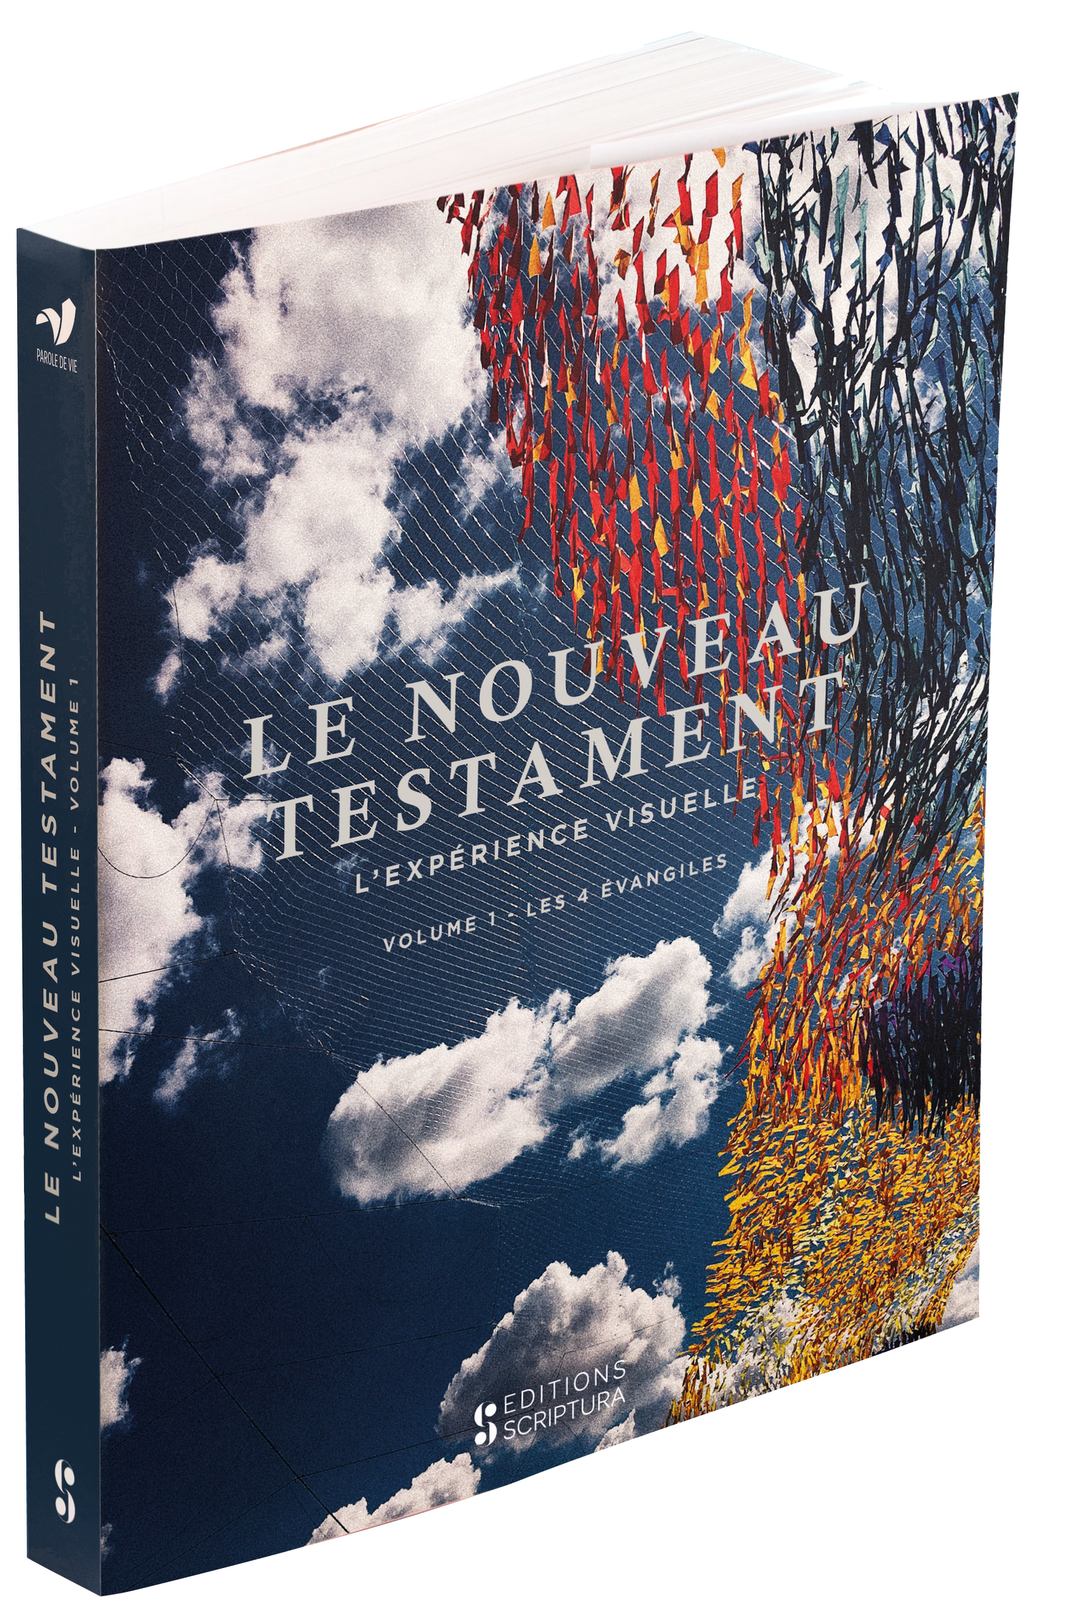 Nouveau Testament (Le) - L'expérience visuelle, volume 1 : Les 4 Évangiles